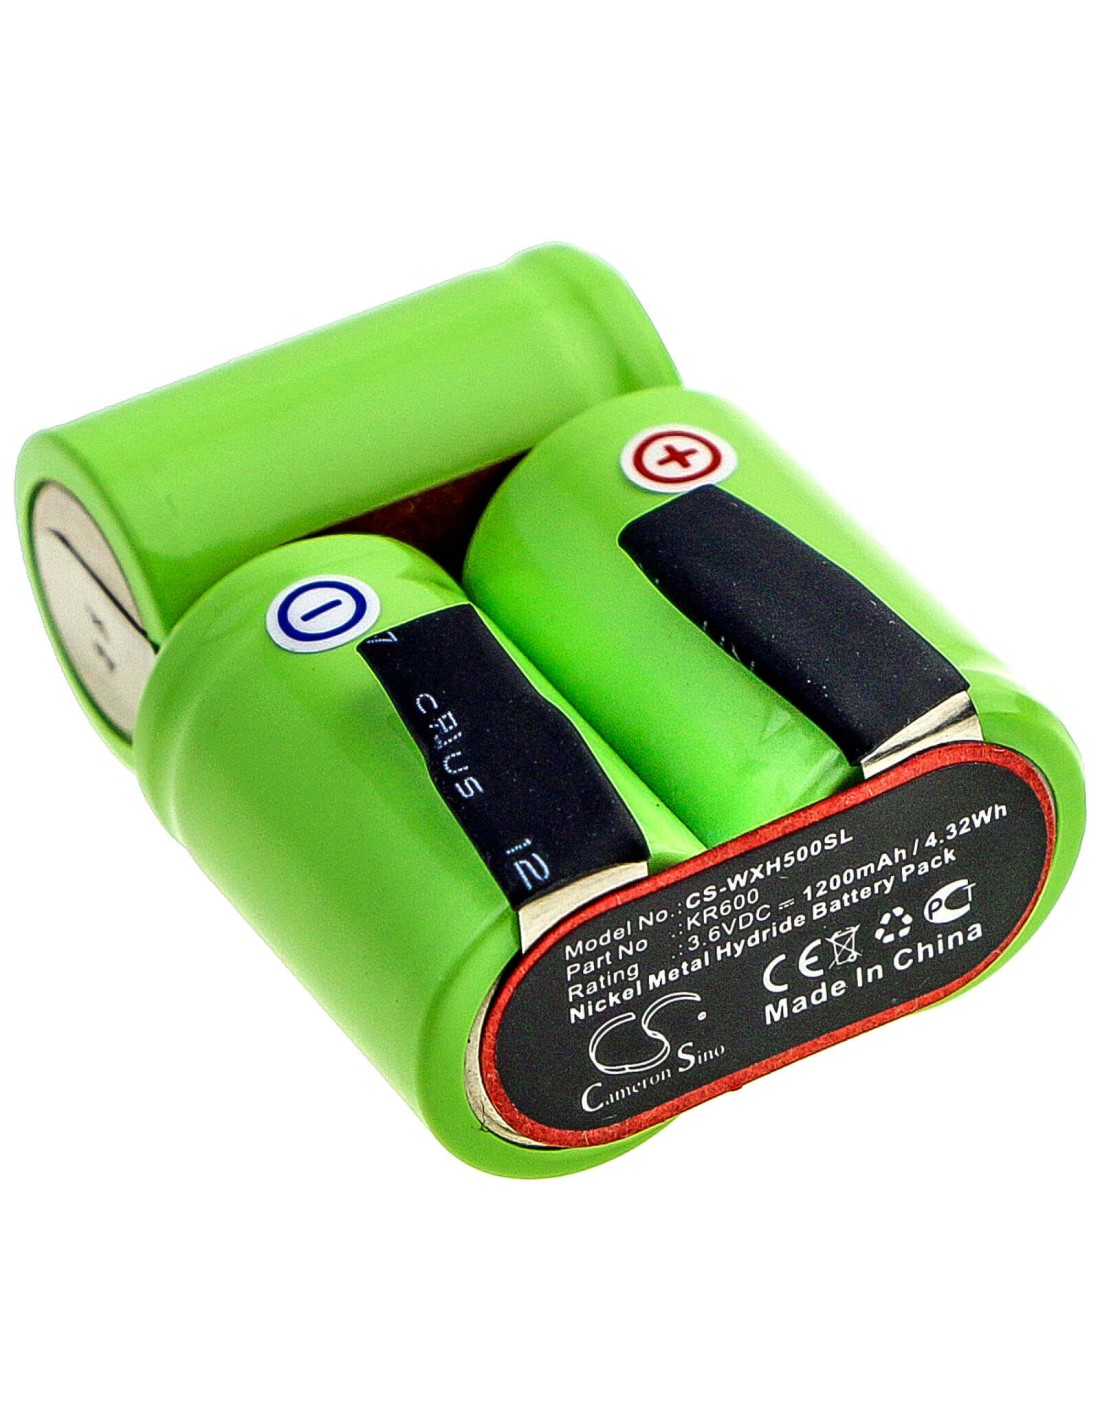 Battery for Tondeo, Eco Xp, Eco Xp Profi, Wella 3.6V, 1200mAh - 4.32Wh